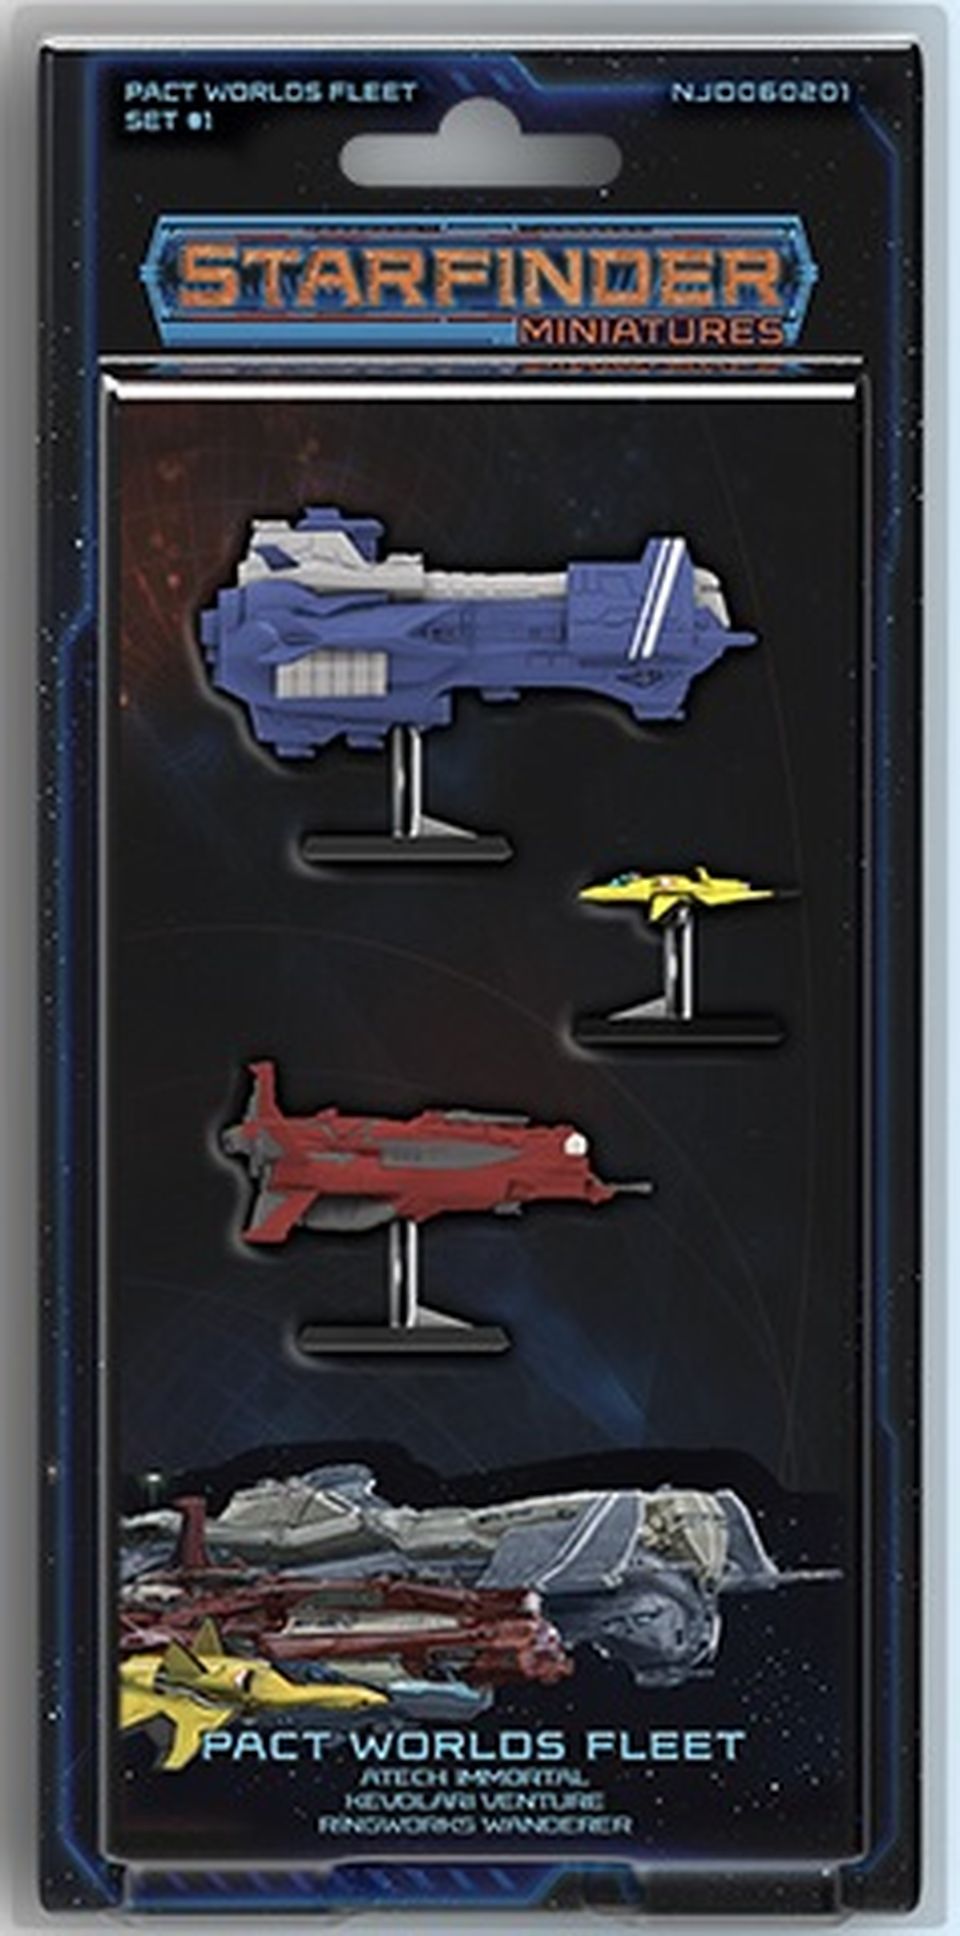 Starfinder Battles: Pact World Fleet Set # 1 image